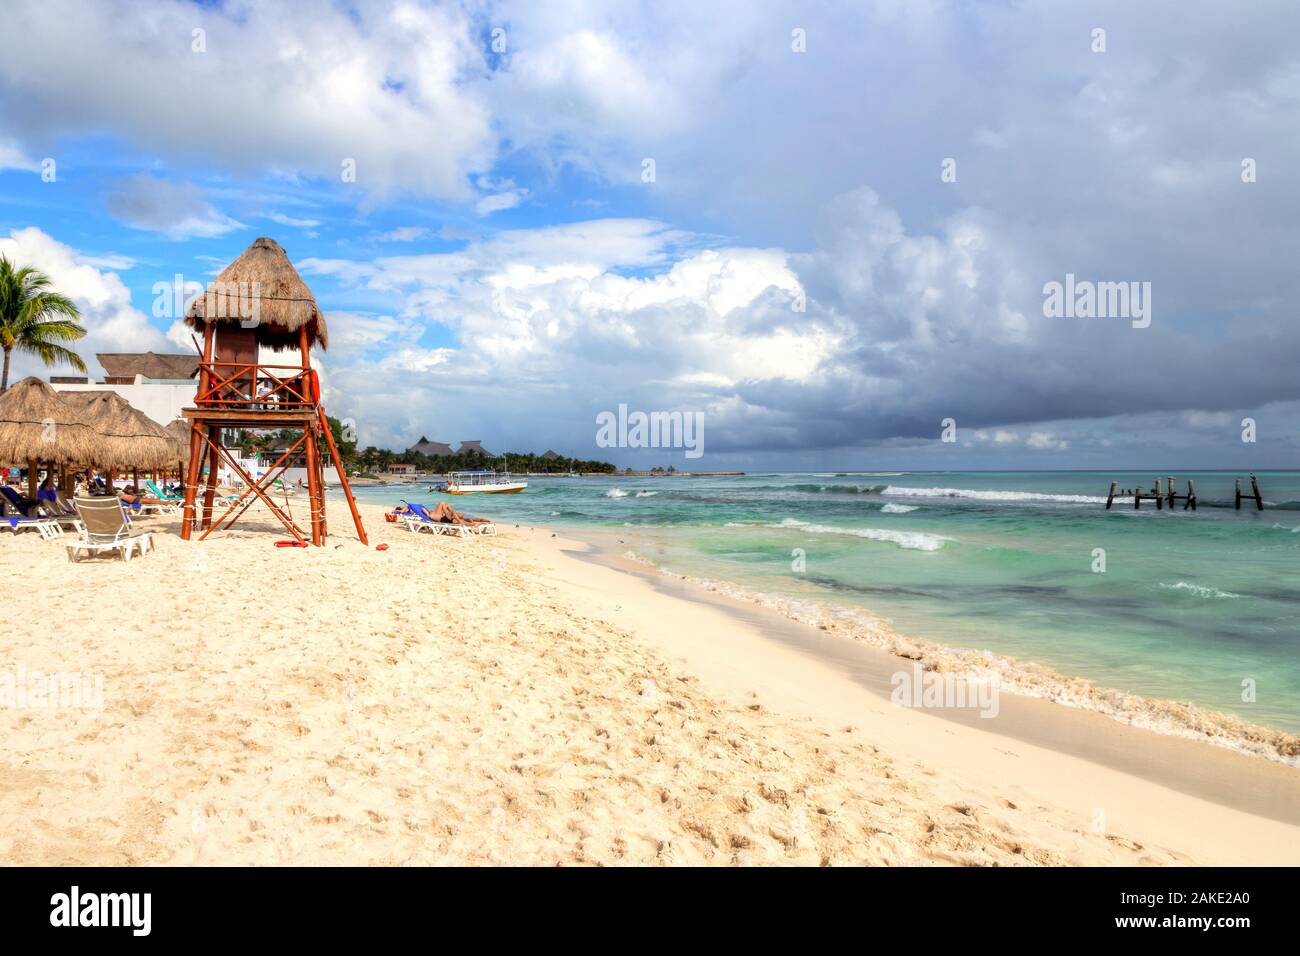 Les plages tropicales de Riviera Maya près de Cancun, au Mexique. Concept des vacances d'été ou d'hiver, escapade à la mer des Caraïbes. Banque D'Images